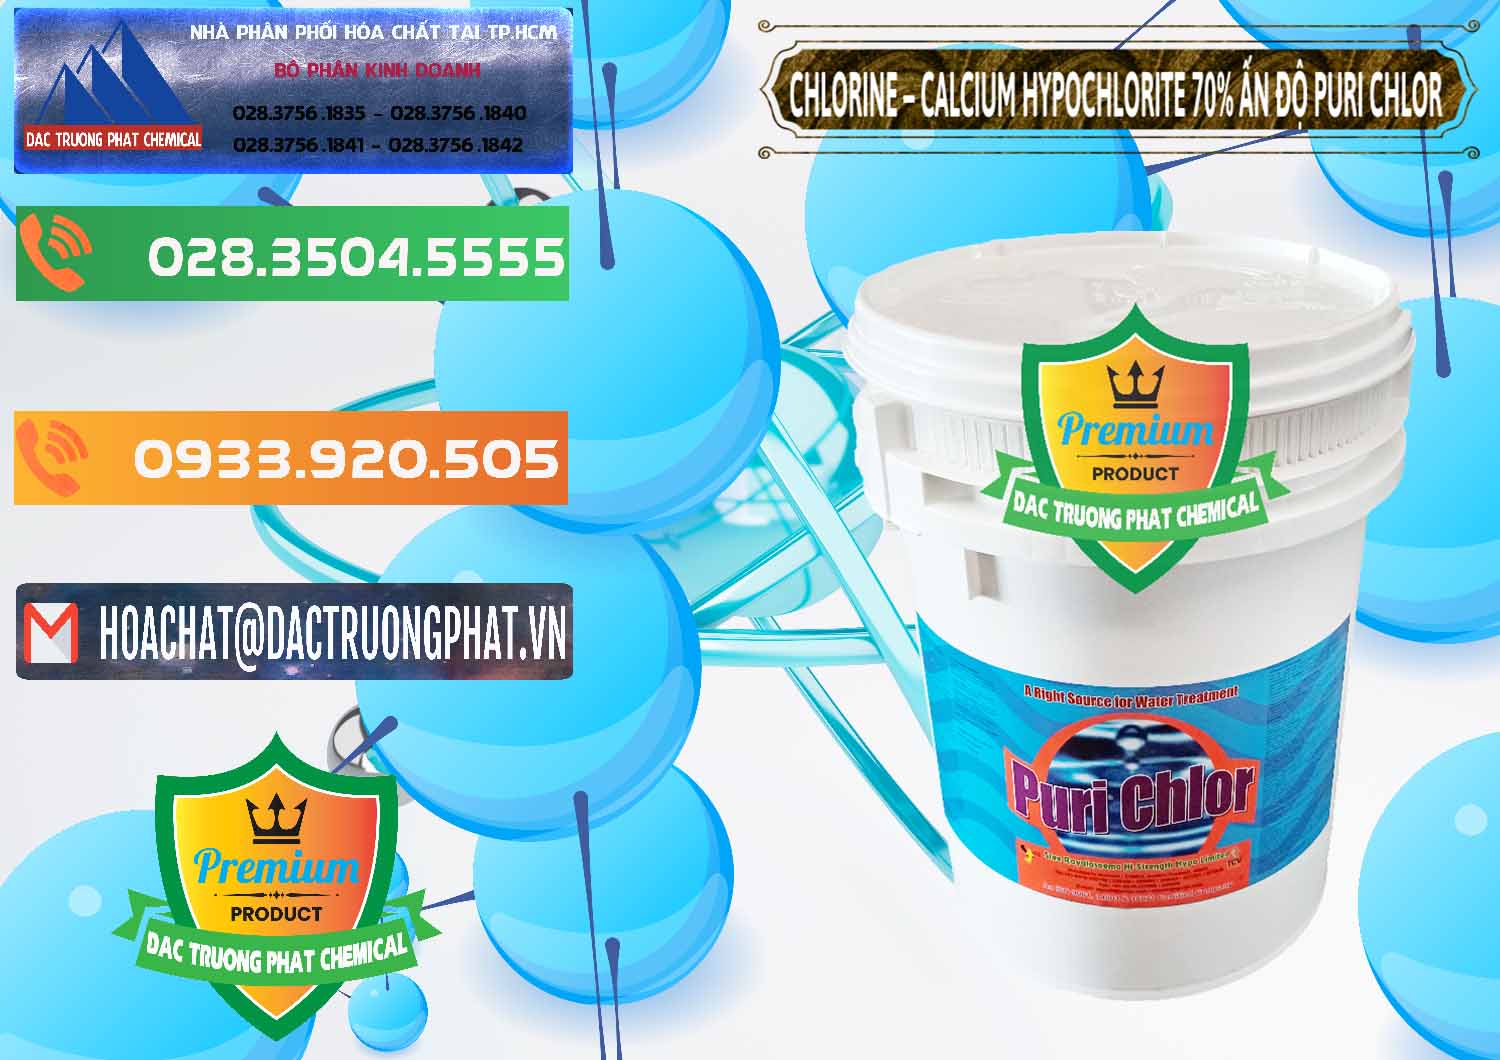 Nhà phân phối & bán Chlorine – Clorin 70% Puri Chlo Ấn Độ India - 0123 - Công ty bán & cung cấp hóa chất tại TP.HCM - hoachatxulynuoc.com.vn